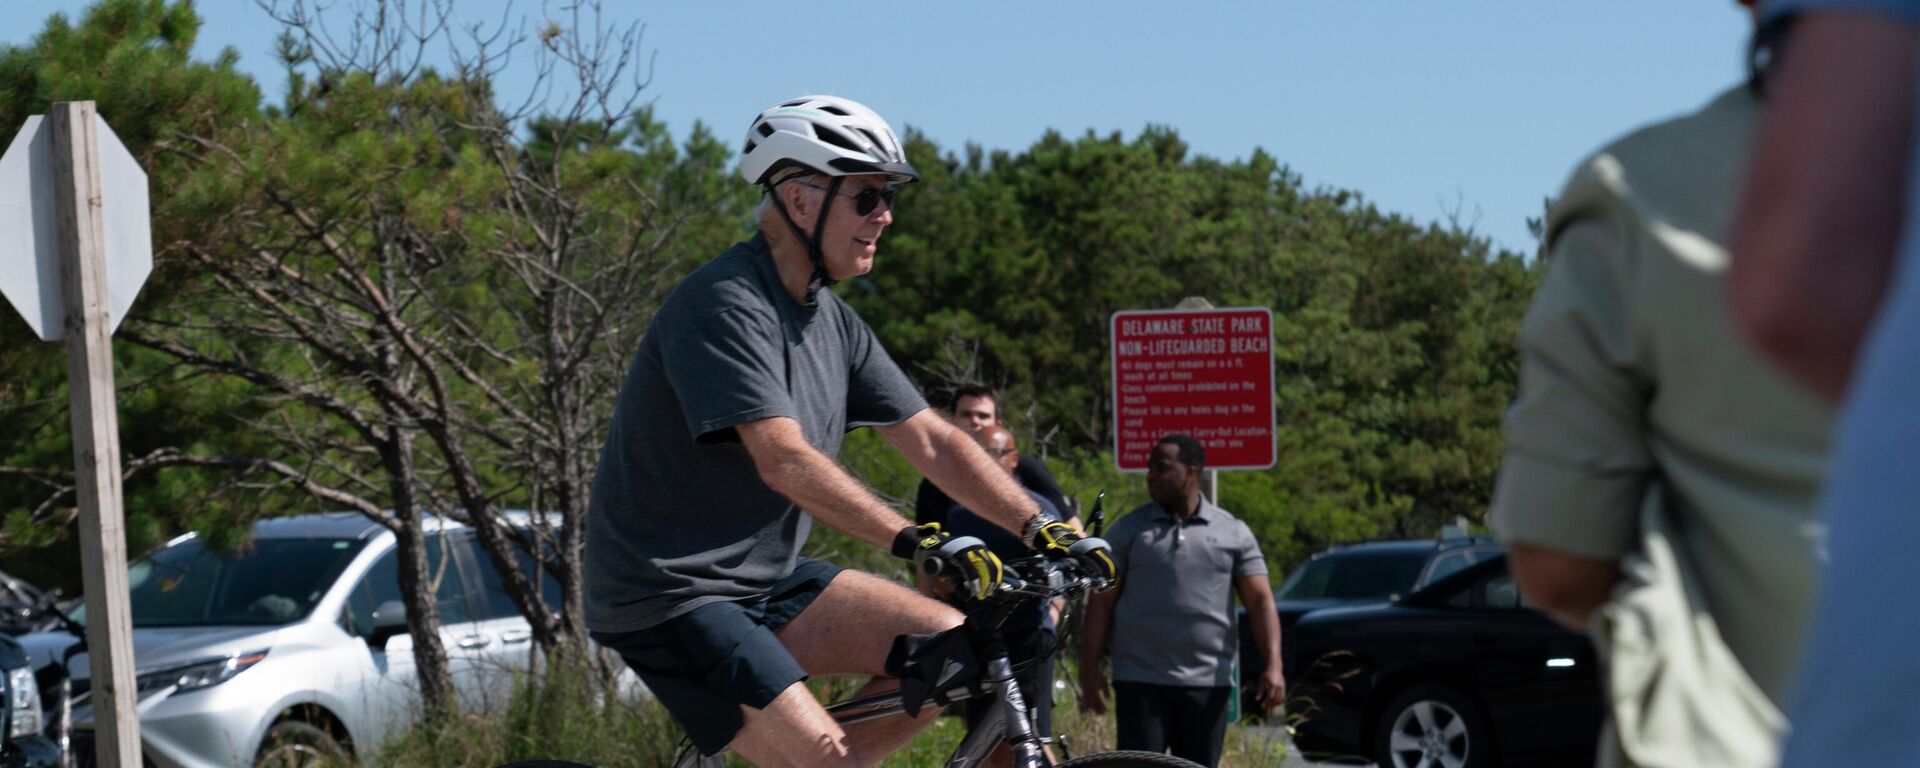 Tổng thống Mỹ Joe Biden đi xe đạp ở khu nghỉ dưỡng Pond Gordons trong thành phố biển Rehoboth Beach, bang Delaware. - Sputnik Việt Nam, 1920, 19.06.2022